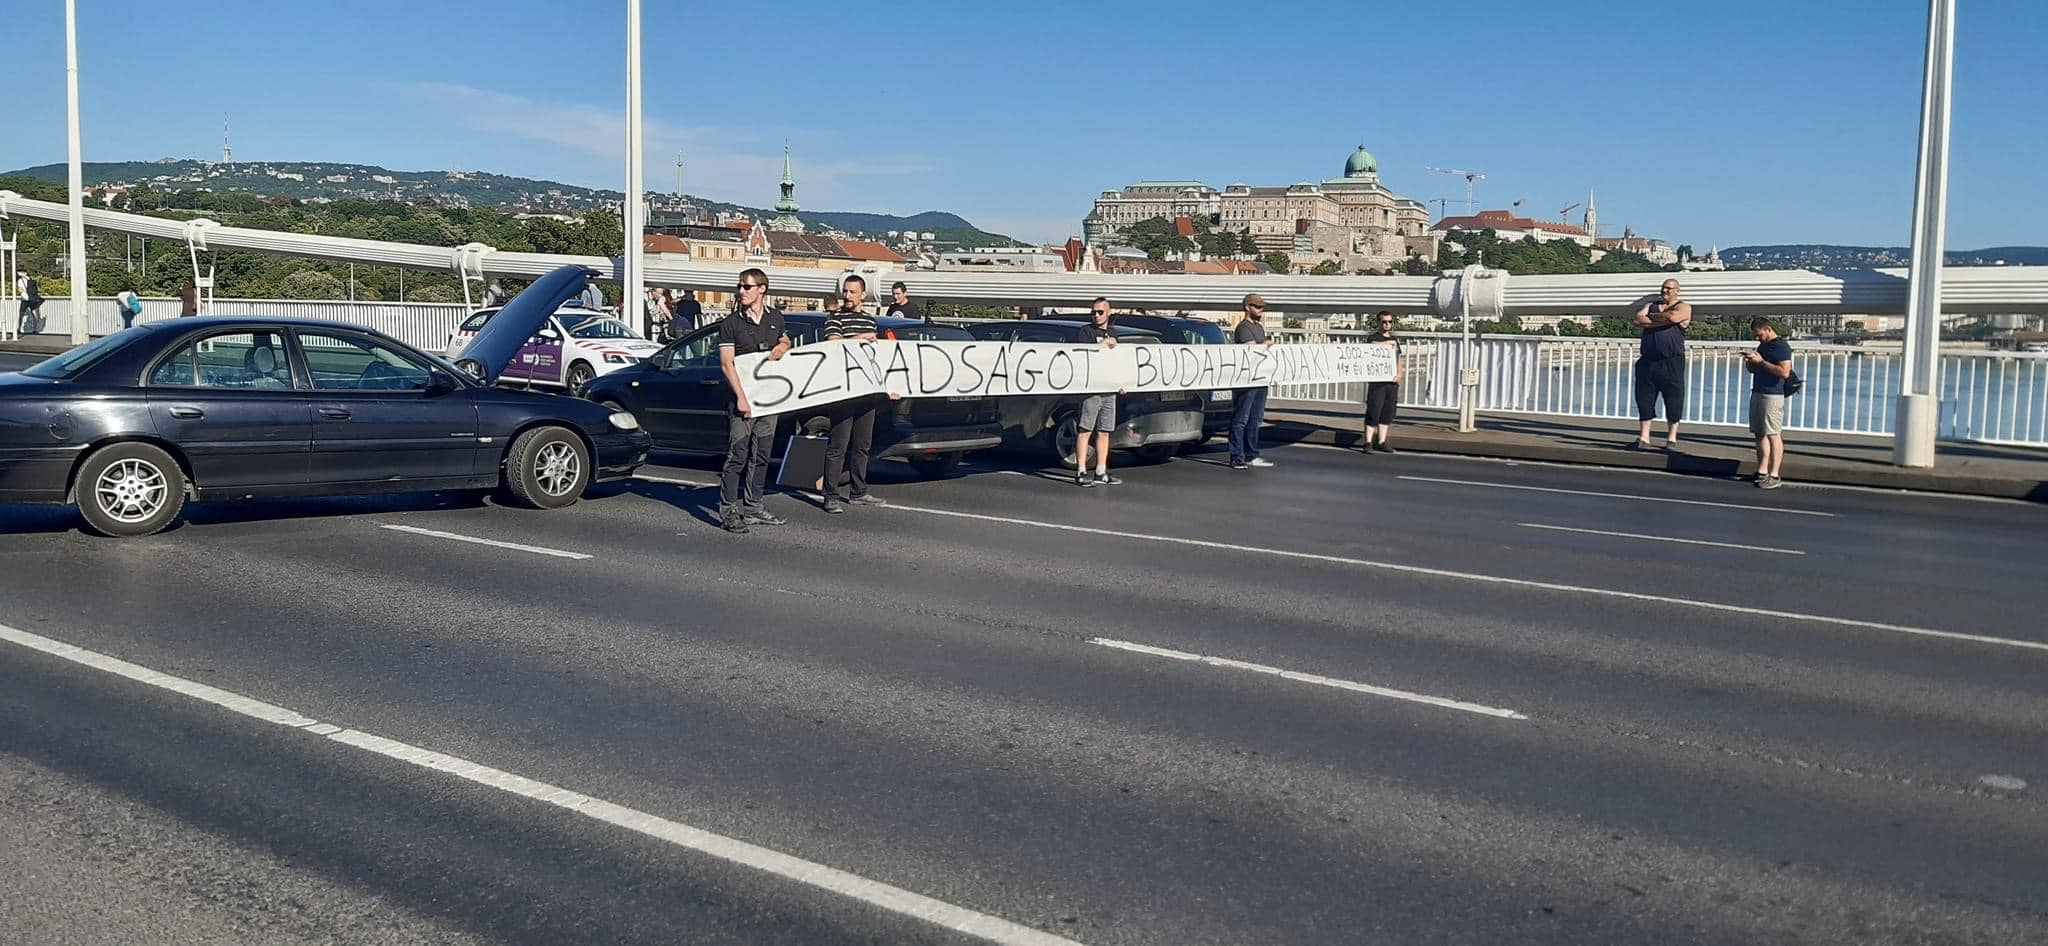 Rendkívüli: Blokád az Erzsébet hídon – szabadságot követelnek Budaházynak